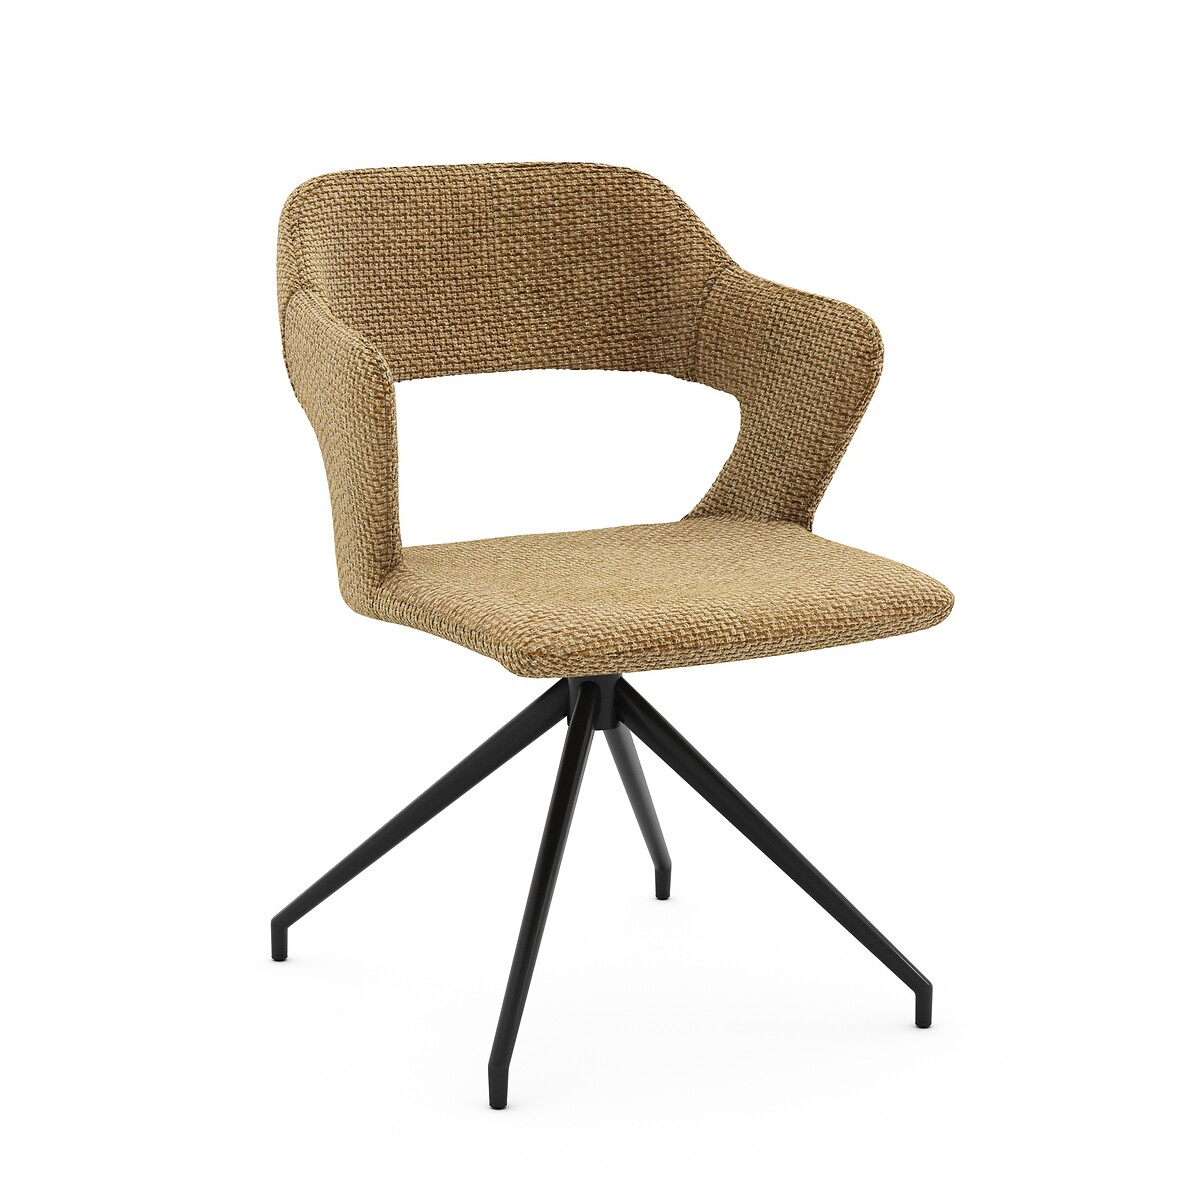 Кресло для стола вращающееся Asyar единый размер зеленый кресло барное вращающееся из плетеной ткани asyar единый размер бежевый